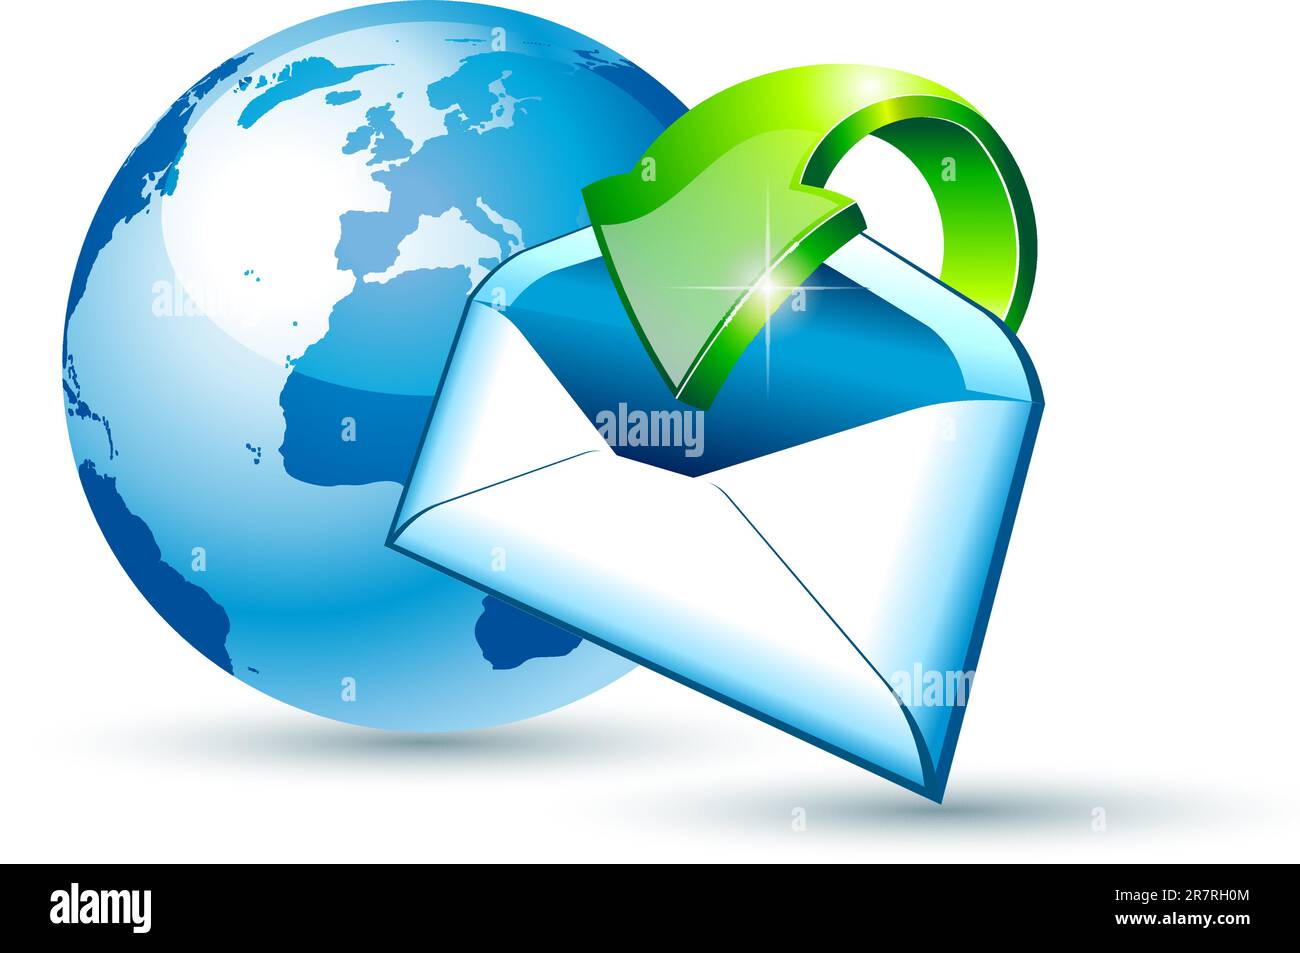 Illustation di concetto di e-mail per spedizioni e comunicazioni globali con una cartolina 3D lucida lucida e stile con una freccia che punta al centro del modello ... Illustrazione Vettoriale